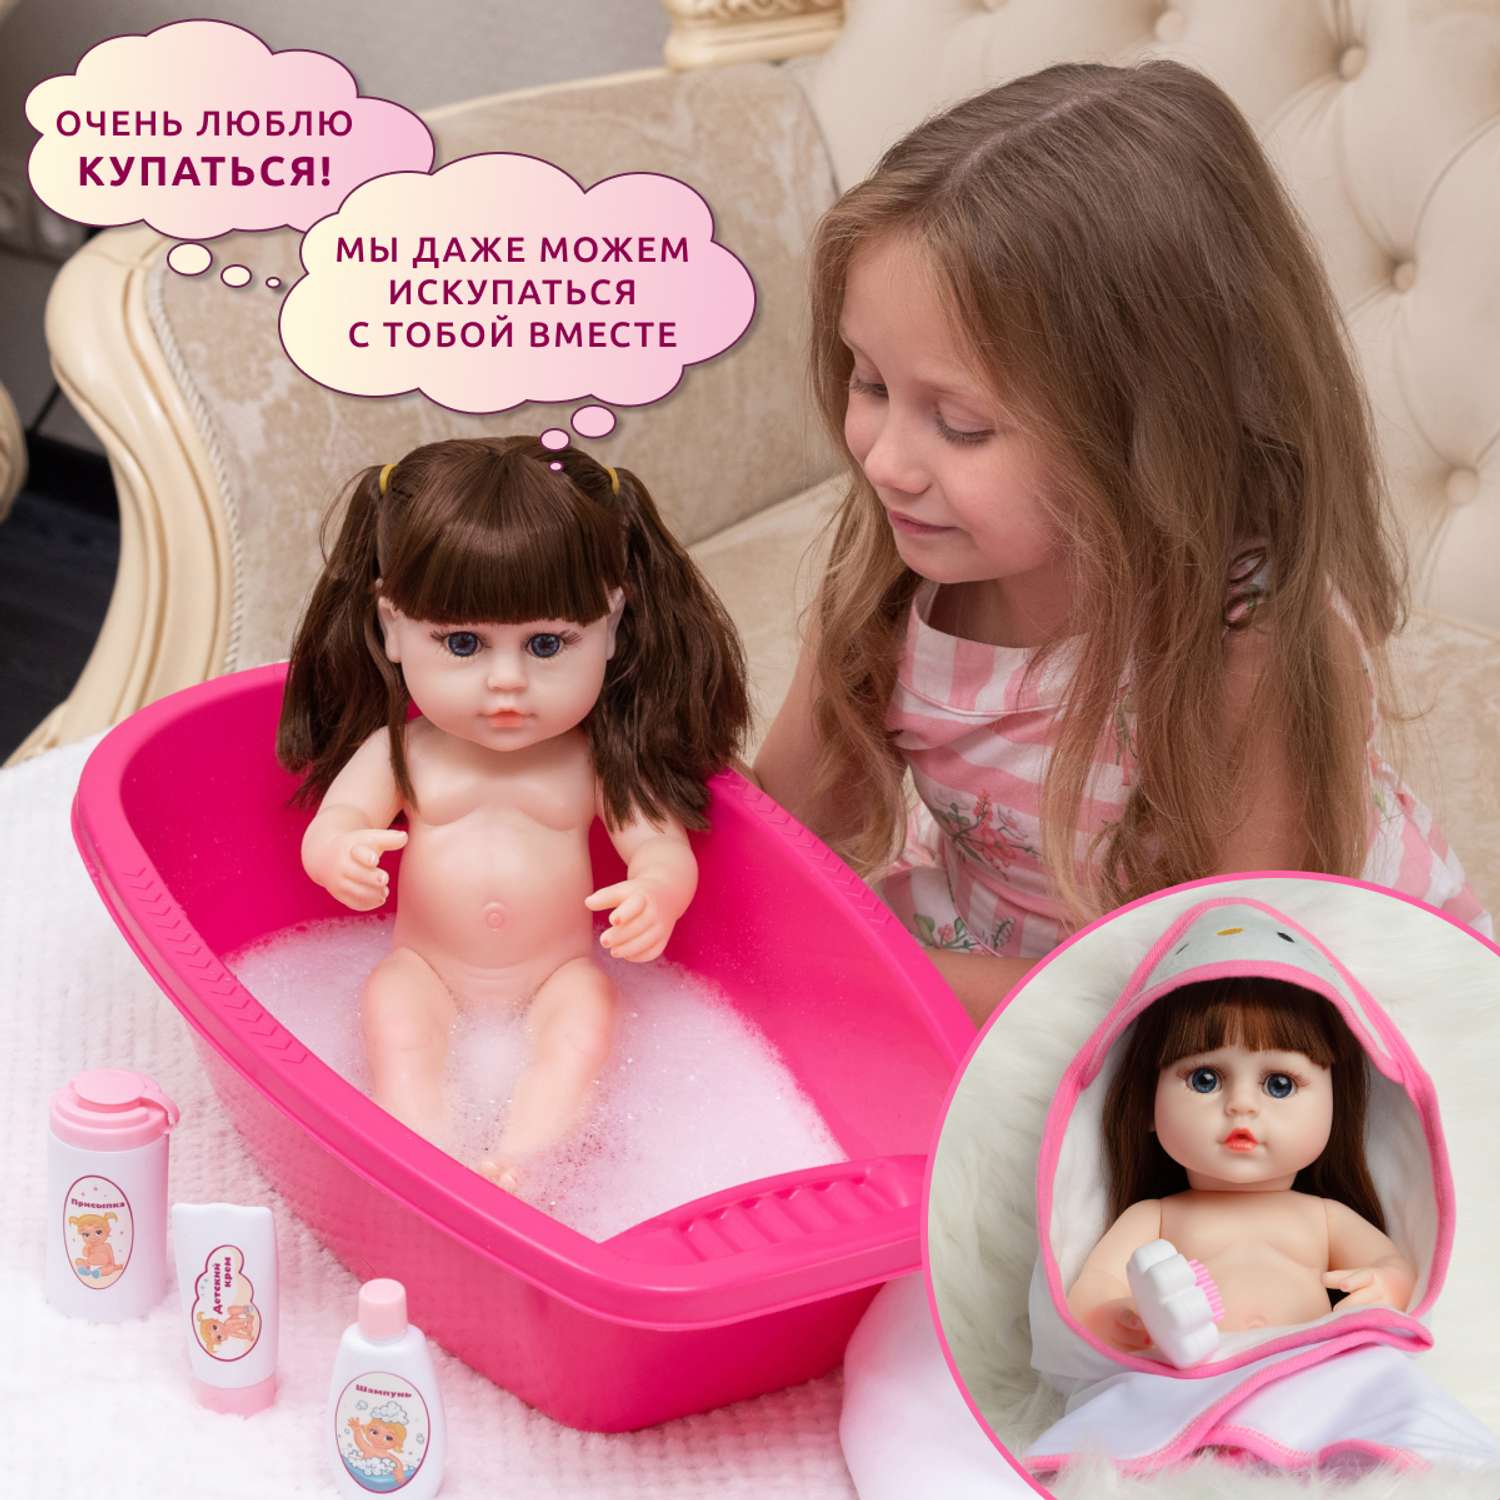 Кукла Реборн QA BABY Марта девочка интерактивная Пупс набор игрушки для ванной для девочки 38 см 3806 - фото 4